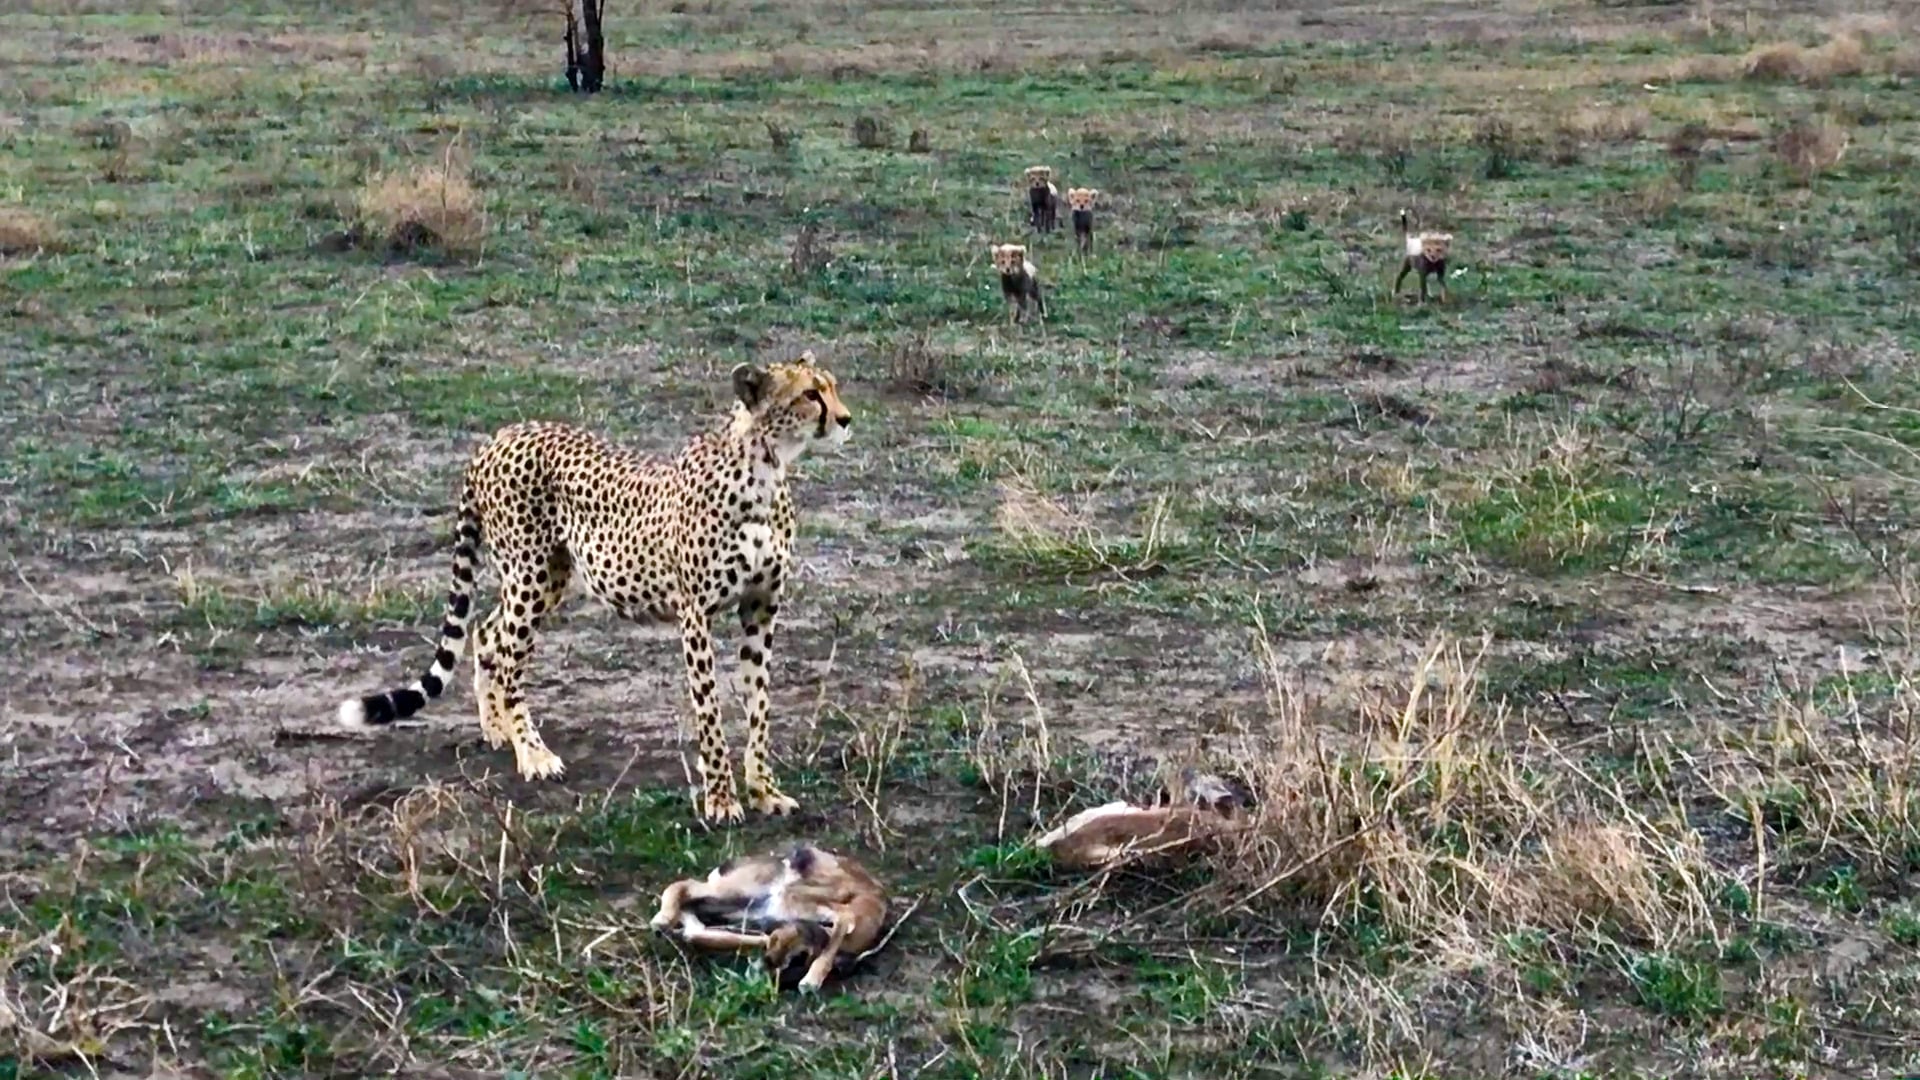 Intense Battle Between Newborn Cheetah and Newborn Buck as baby cheetah takes down baby gazelle in Ngorongoro